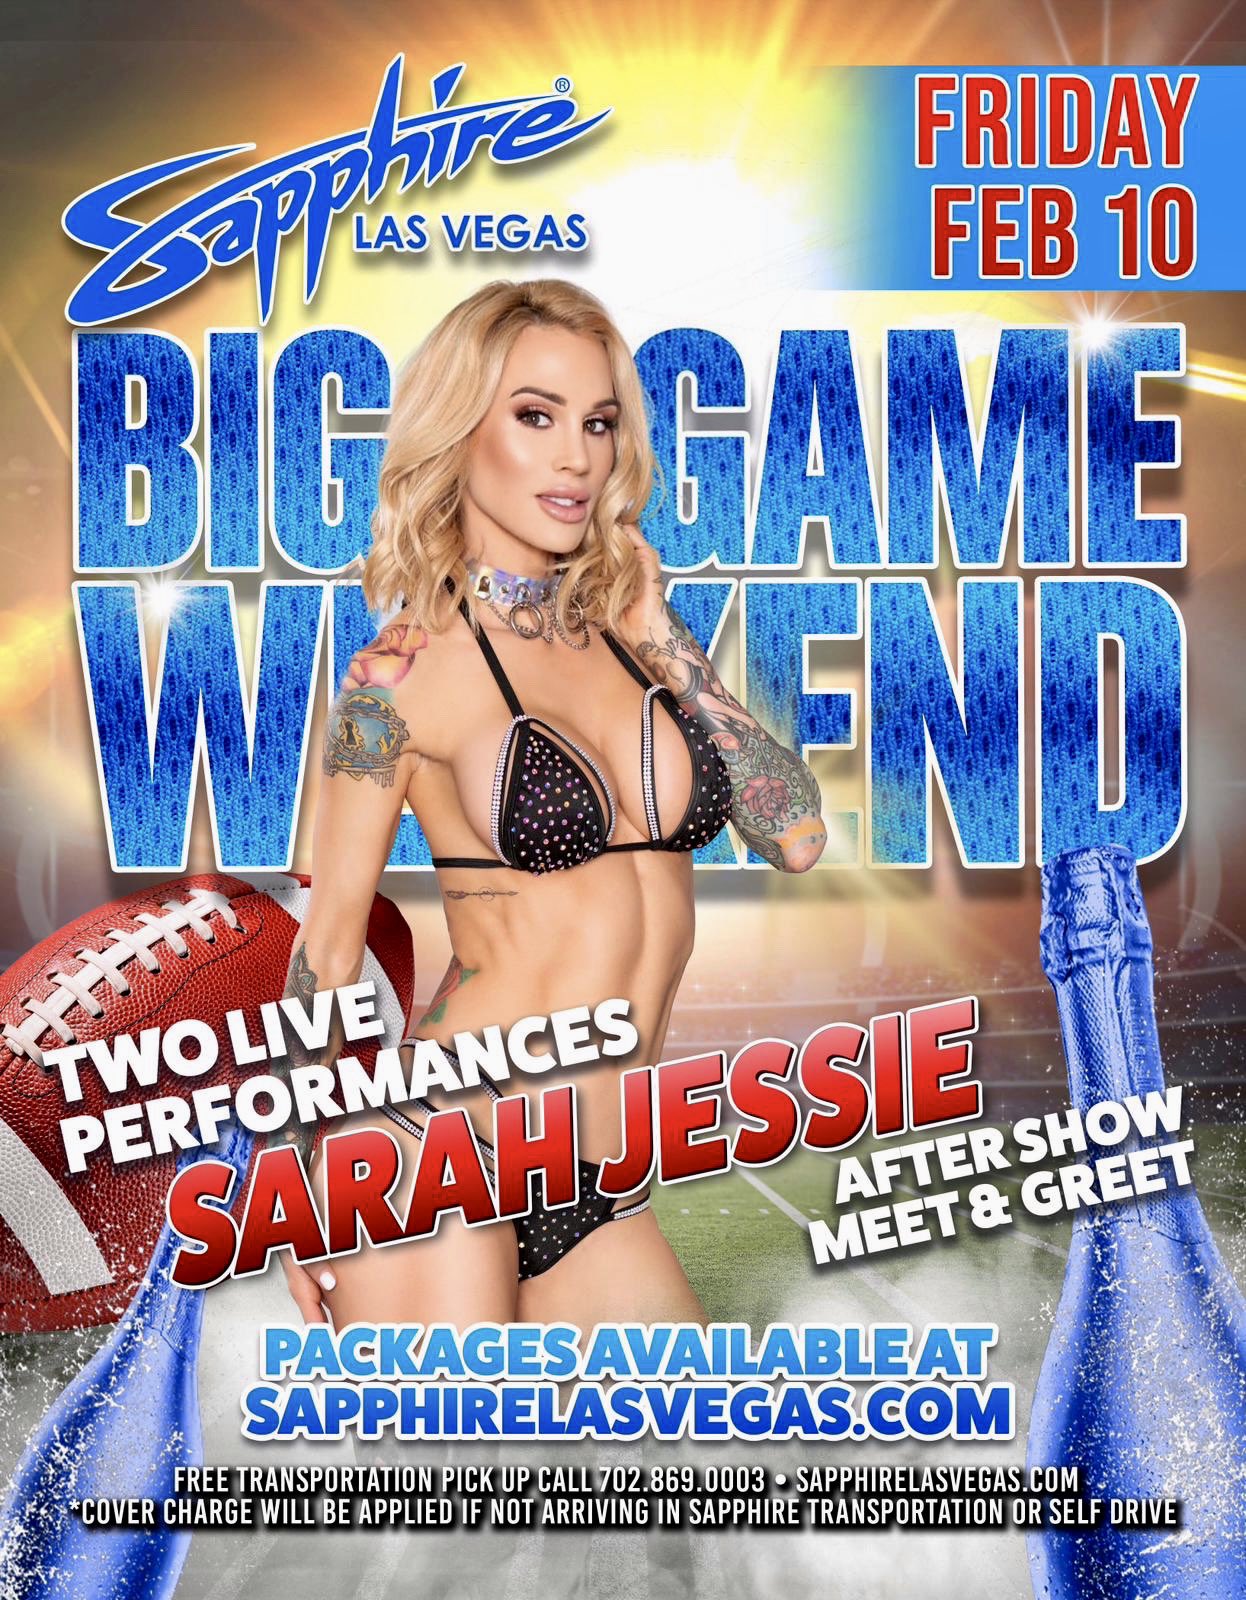 Sarah Jessie to Headline 2 Shows at Sapphire Las Vegas Friday Night